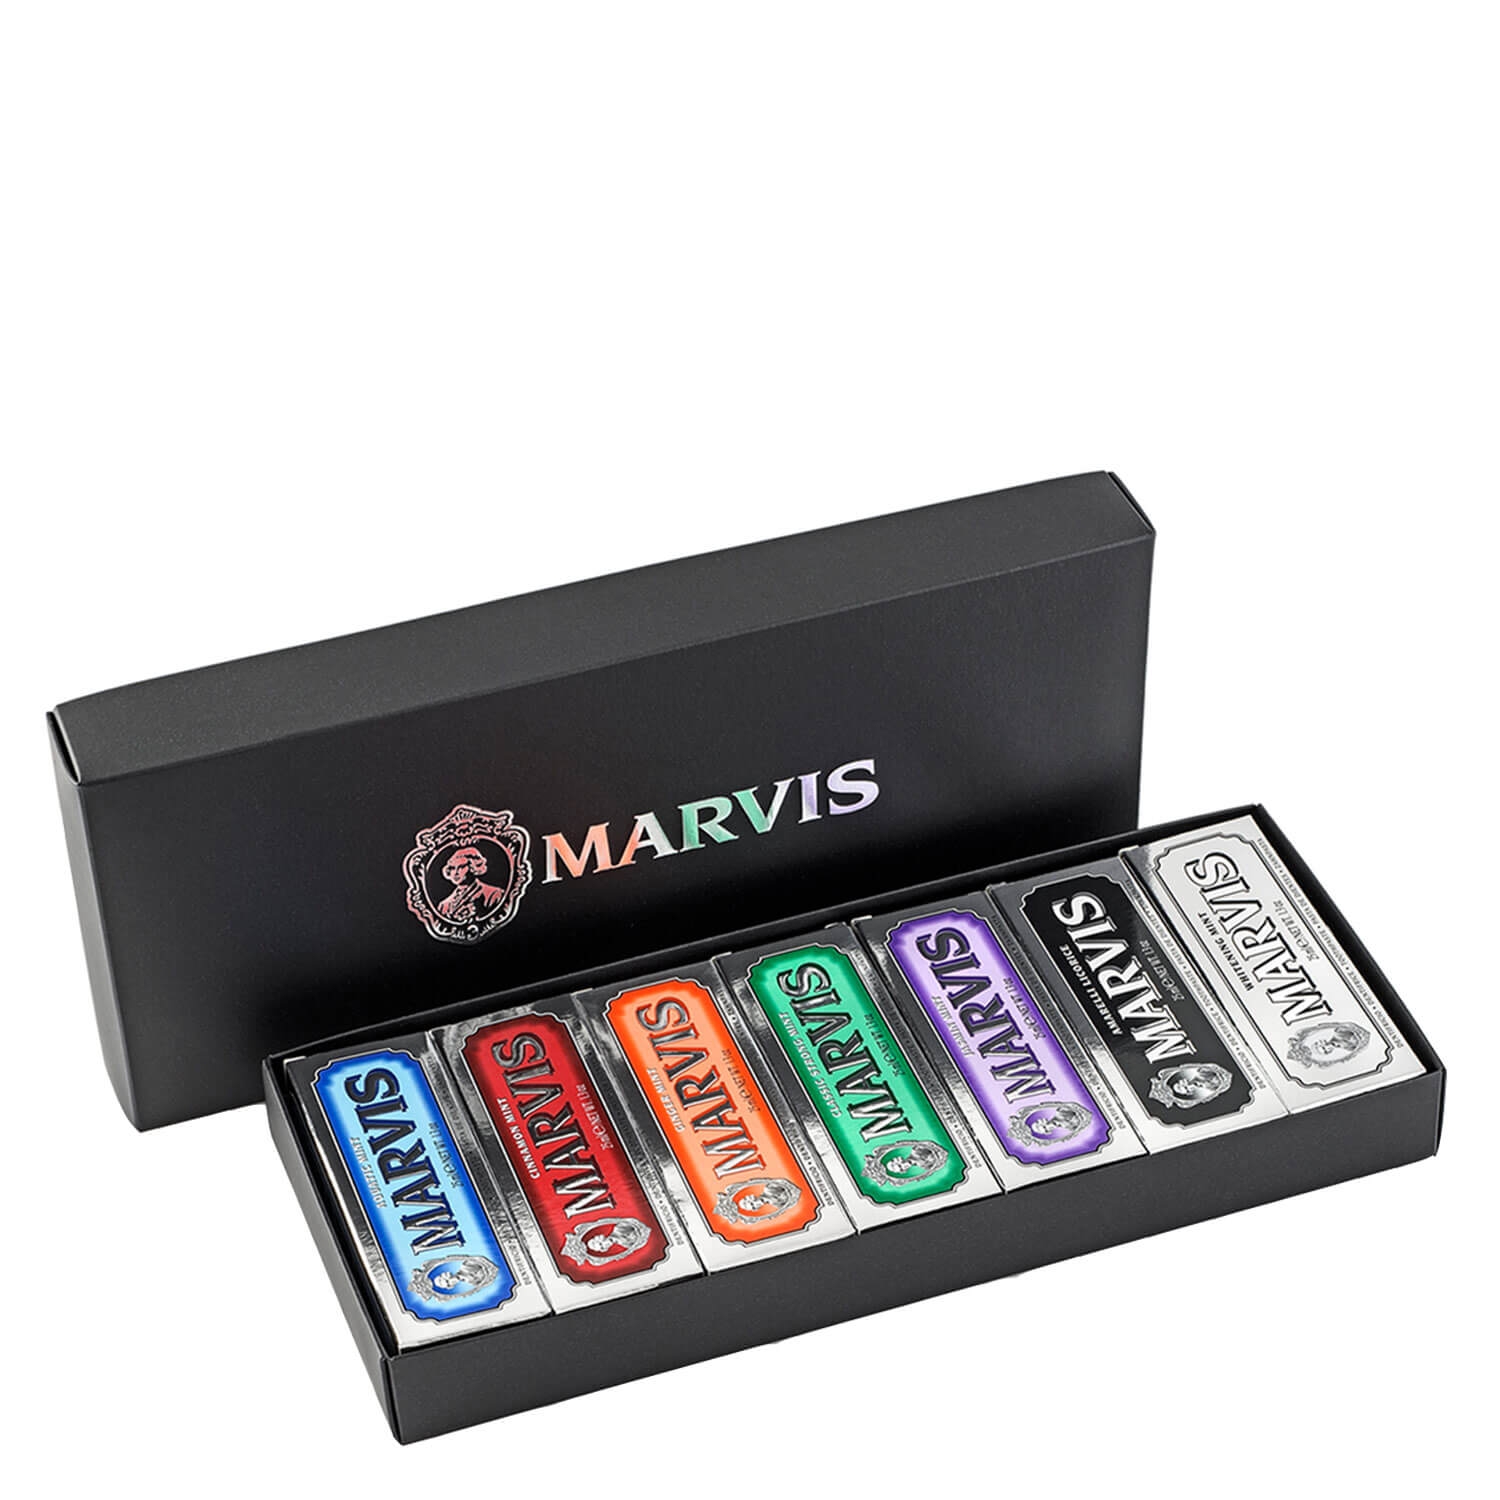 Produktbild von Marvis - 7 Flavours Box